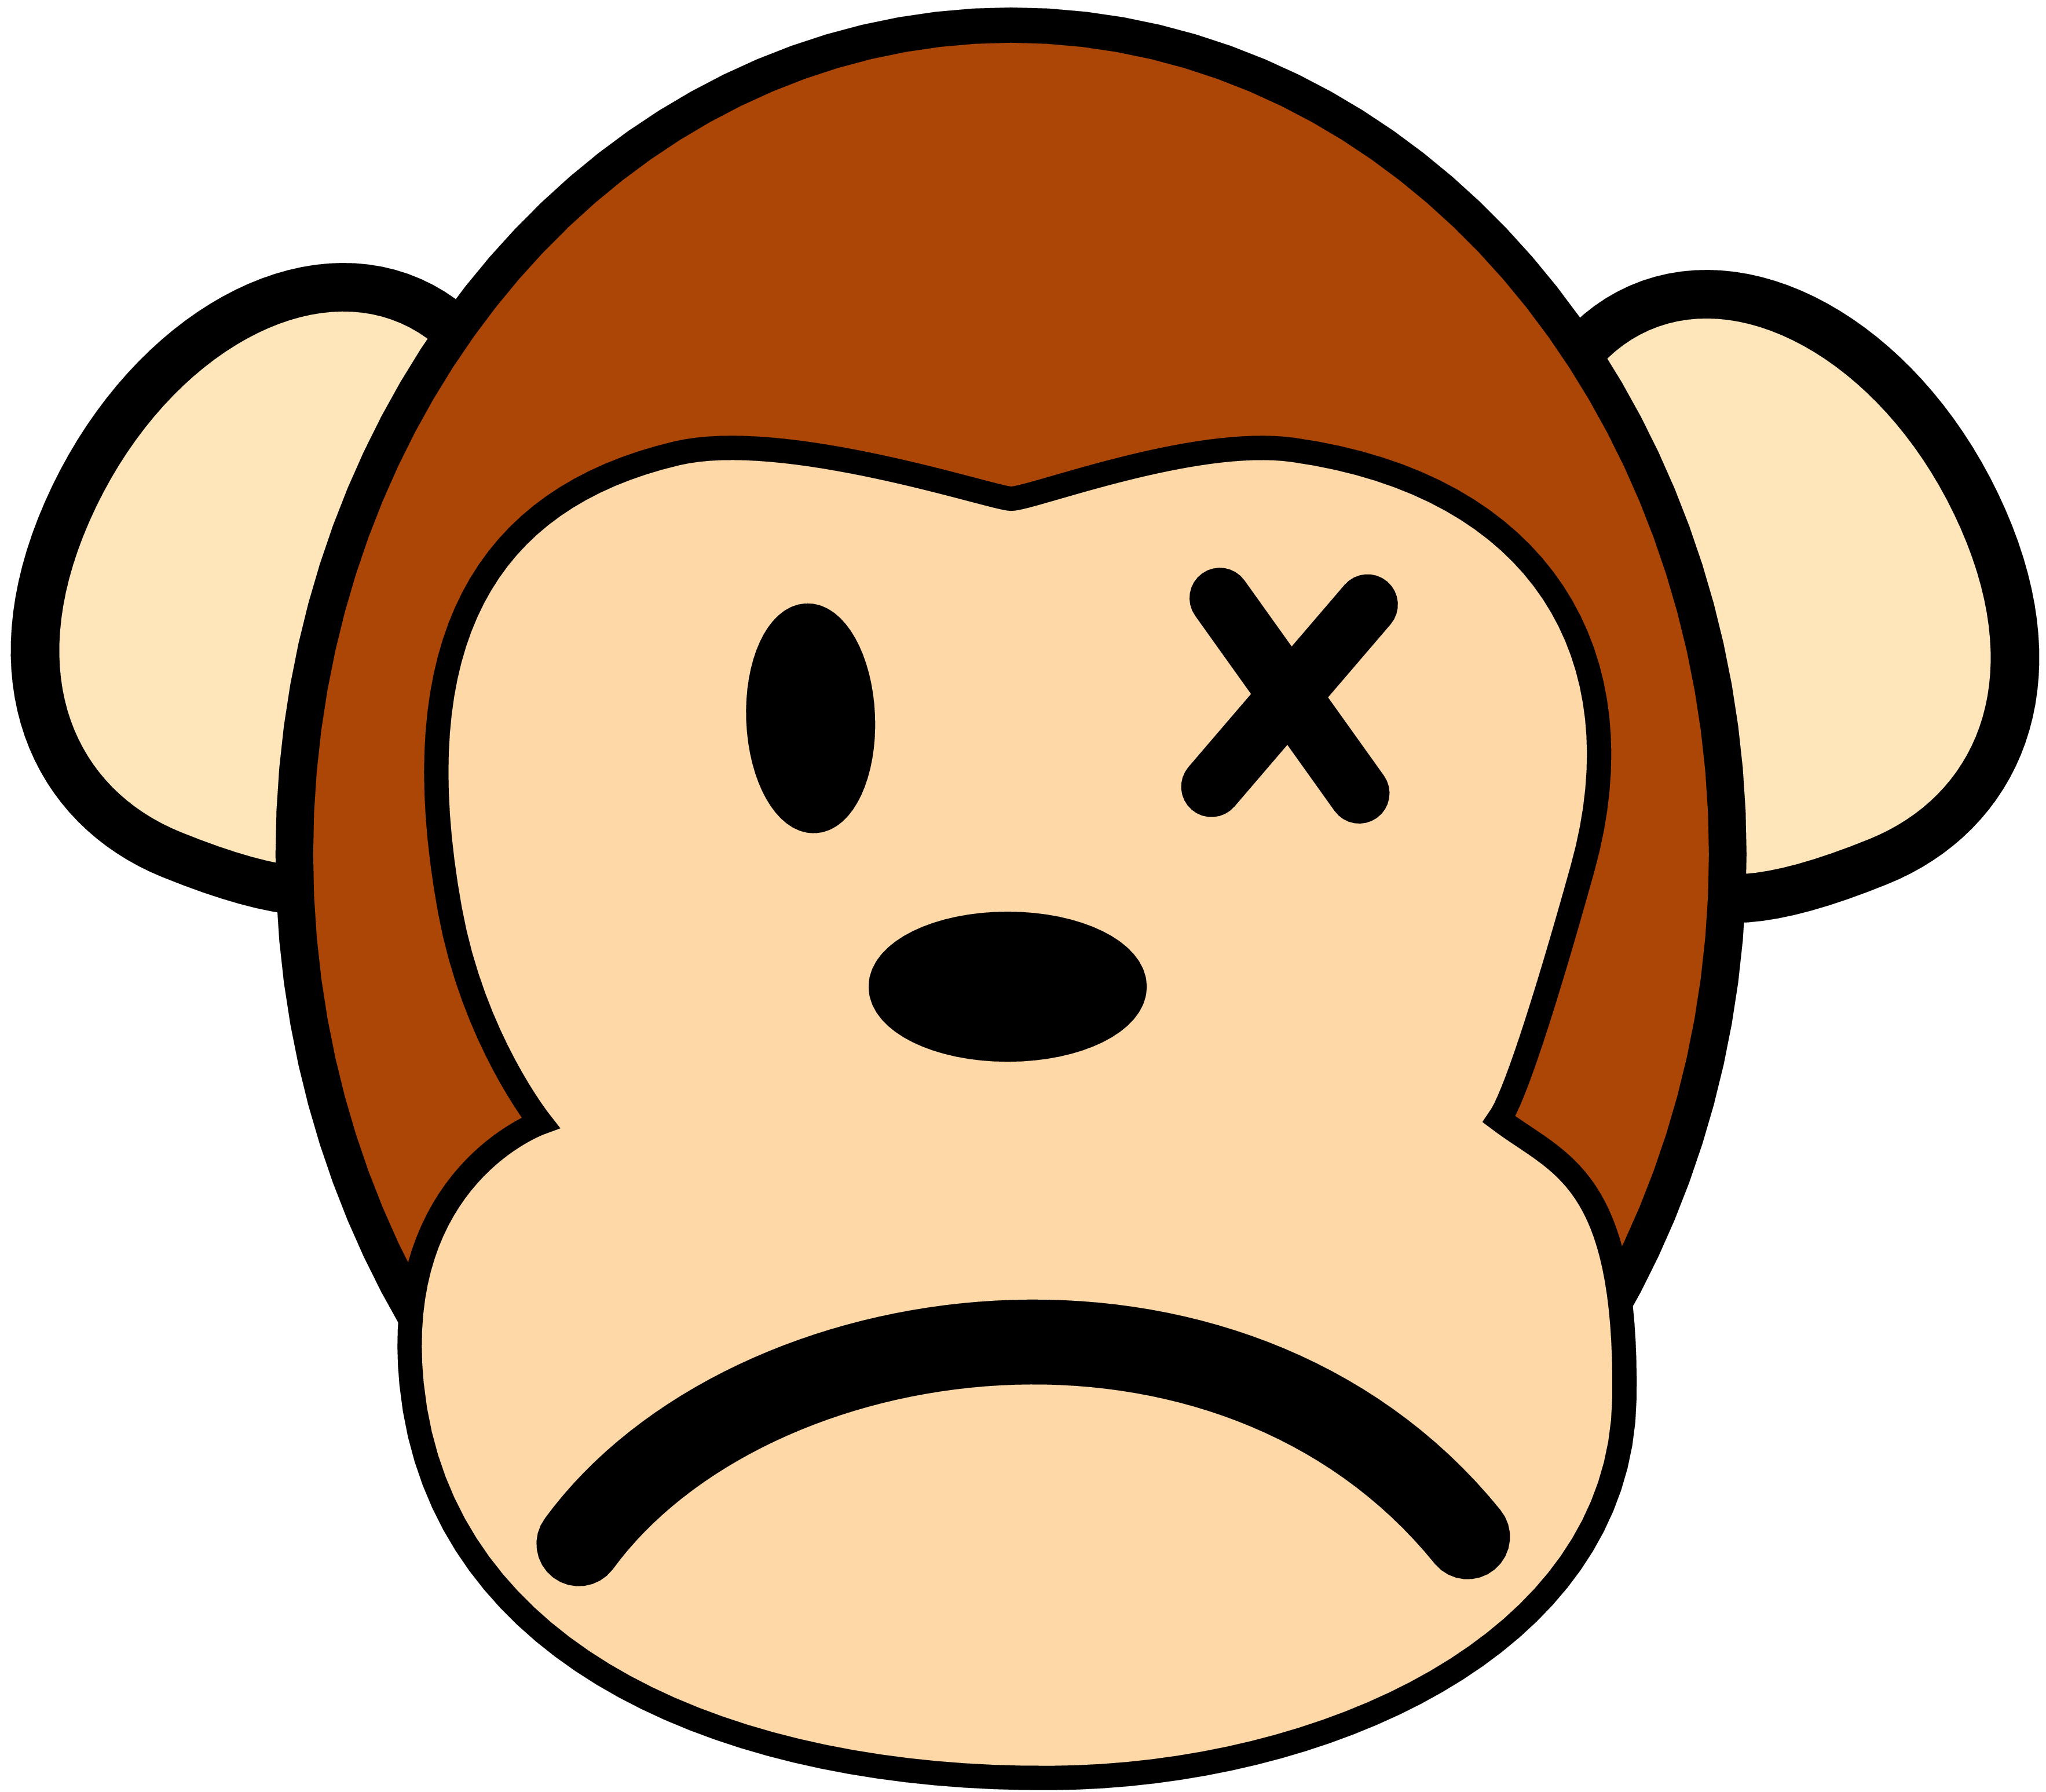 Sad monkey clipart